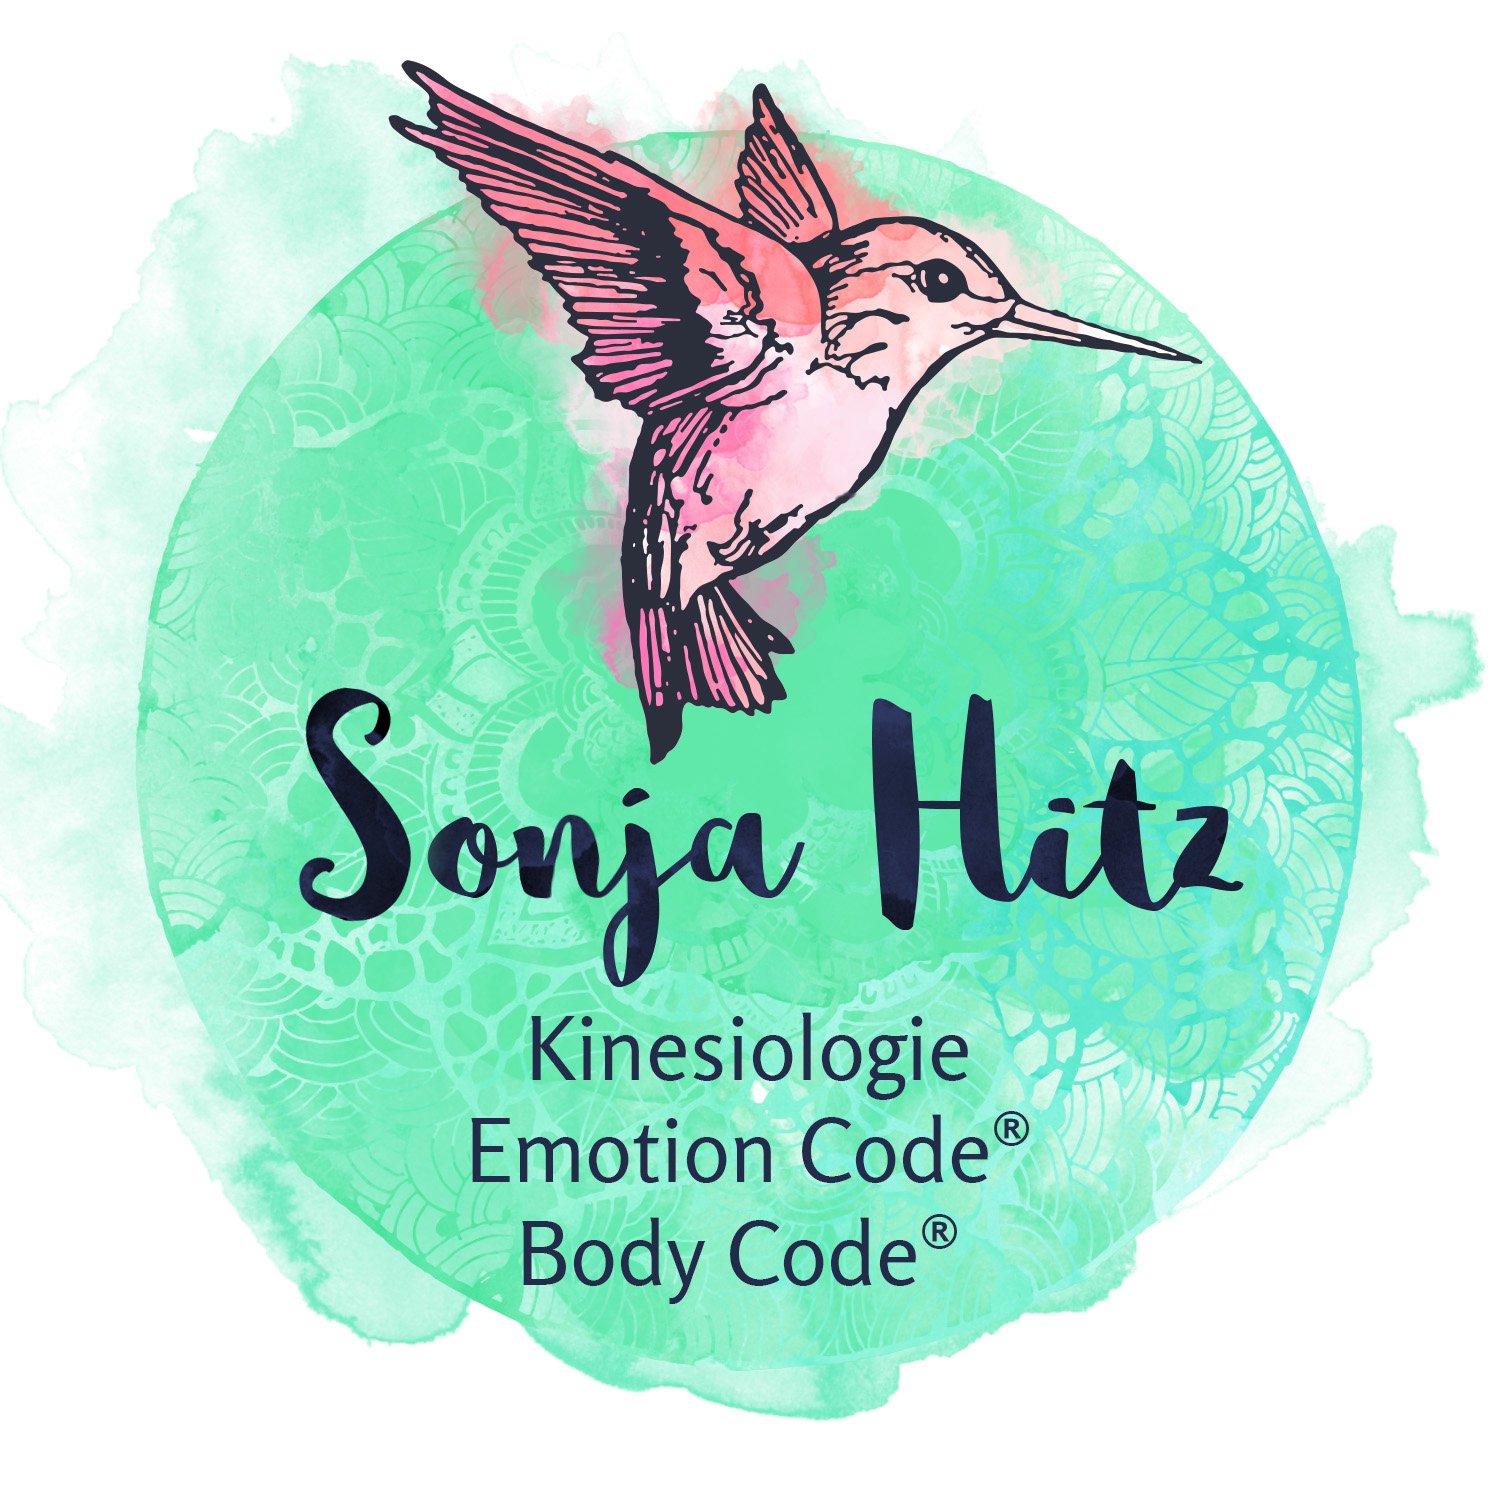 Sonja Hitz, Praxis für Kinesiologie AP, Emotion Code® & Body Code® in Willisau und Zürich